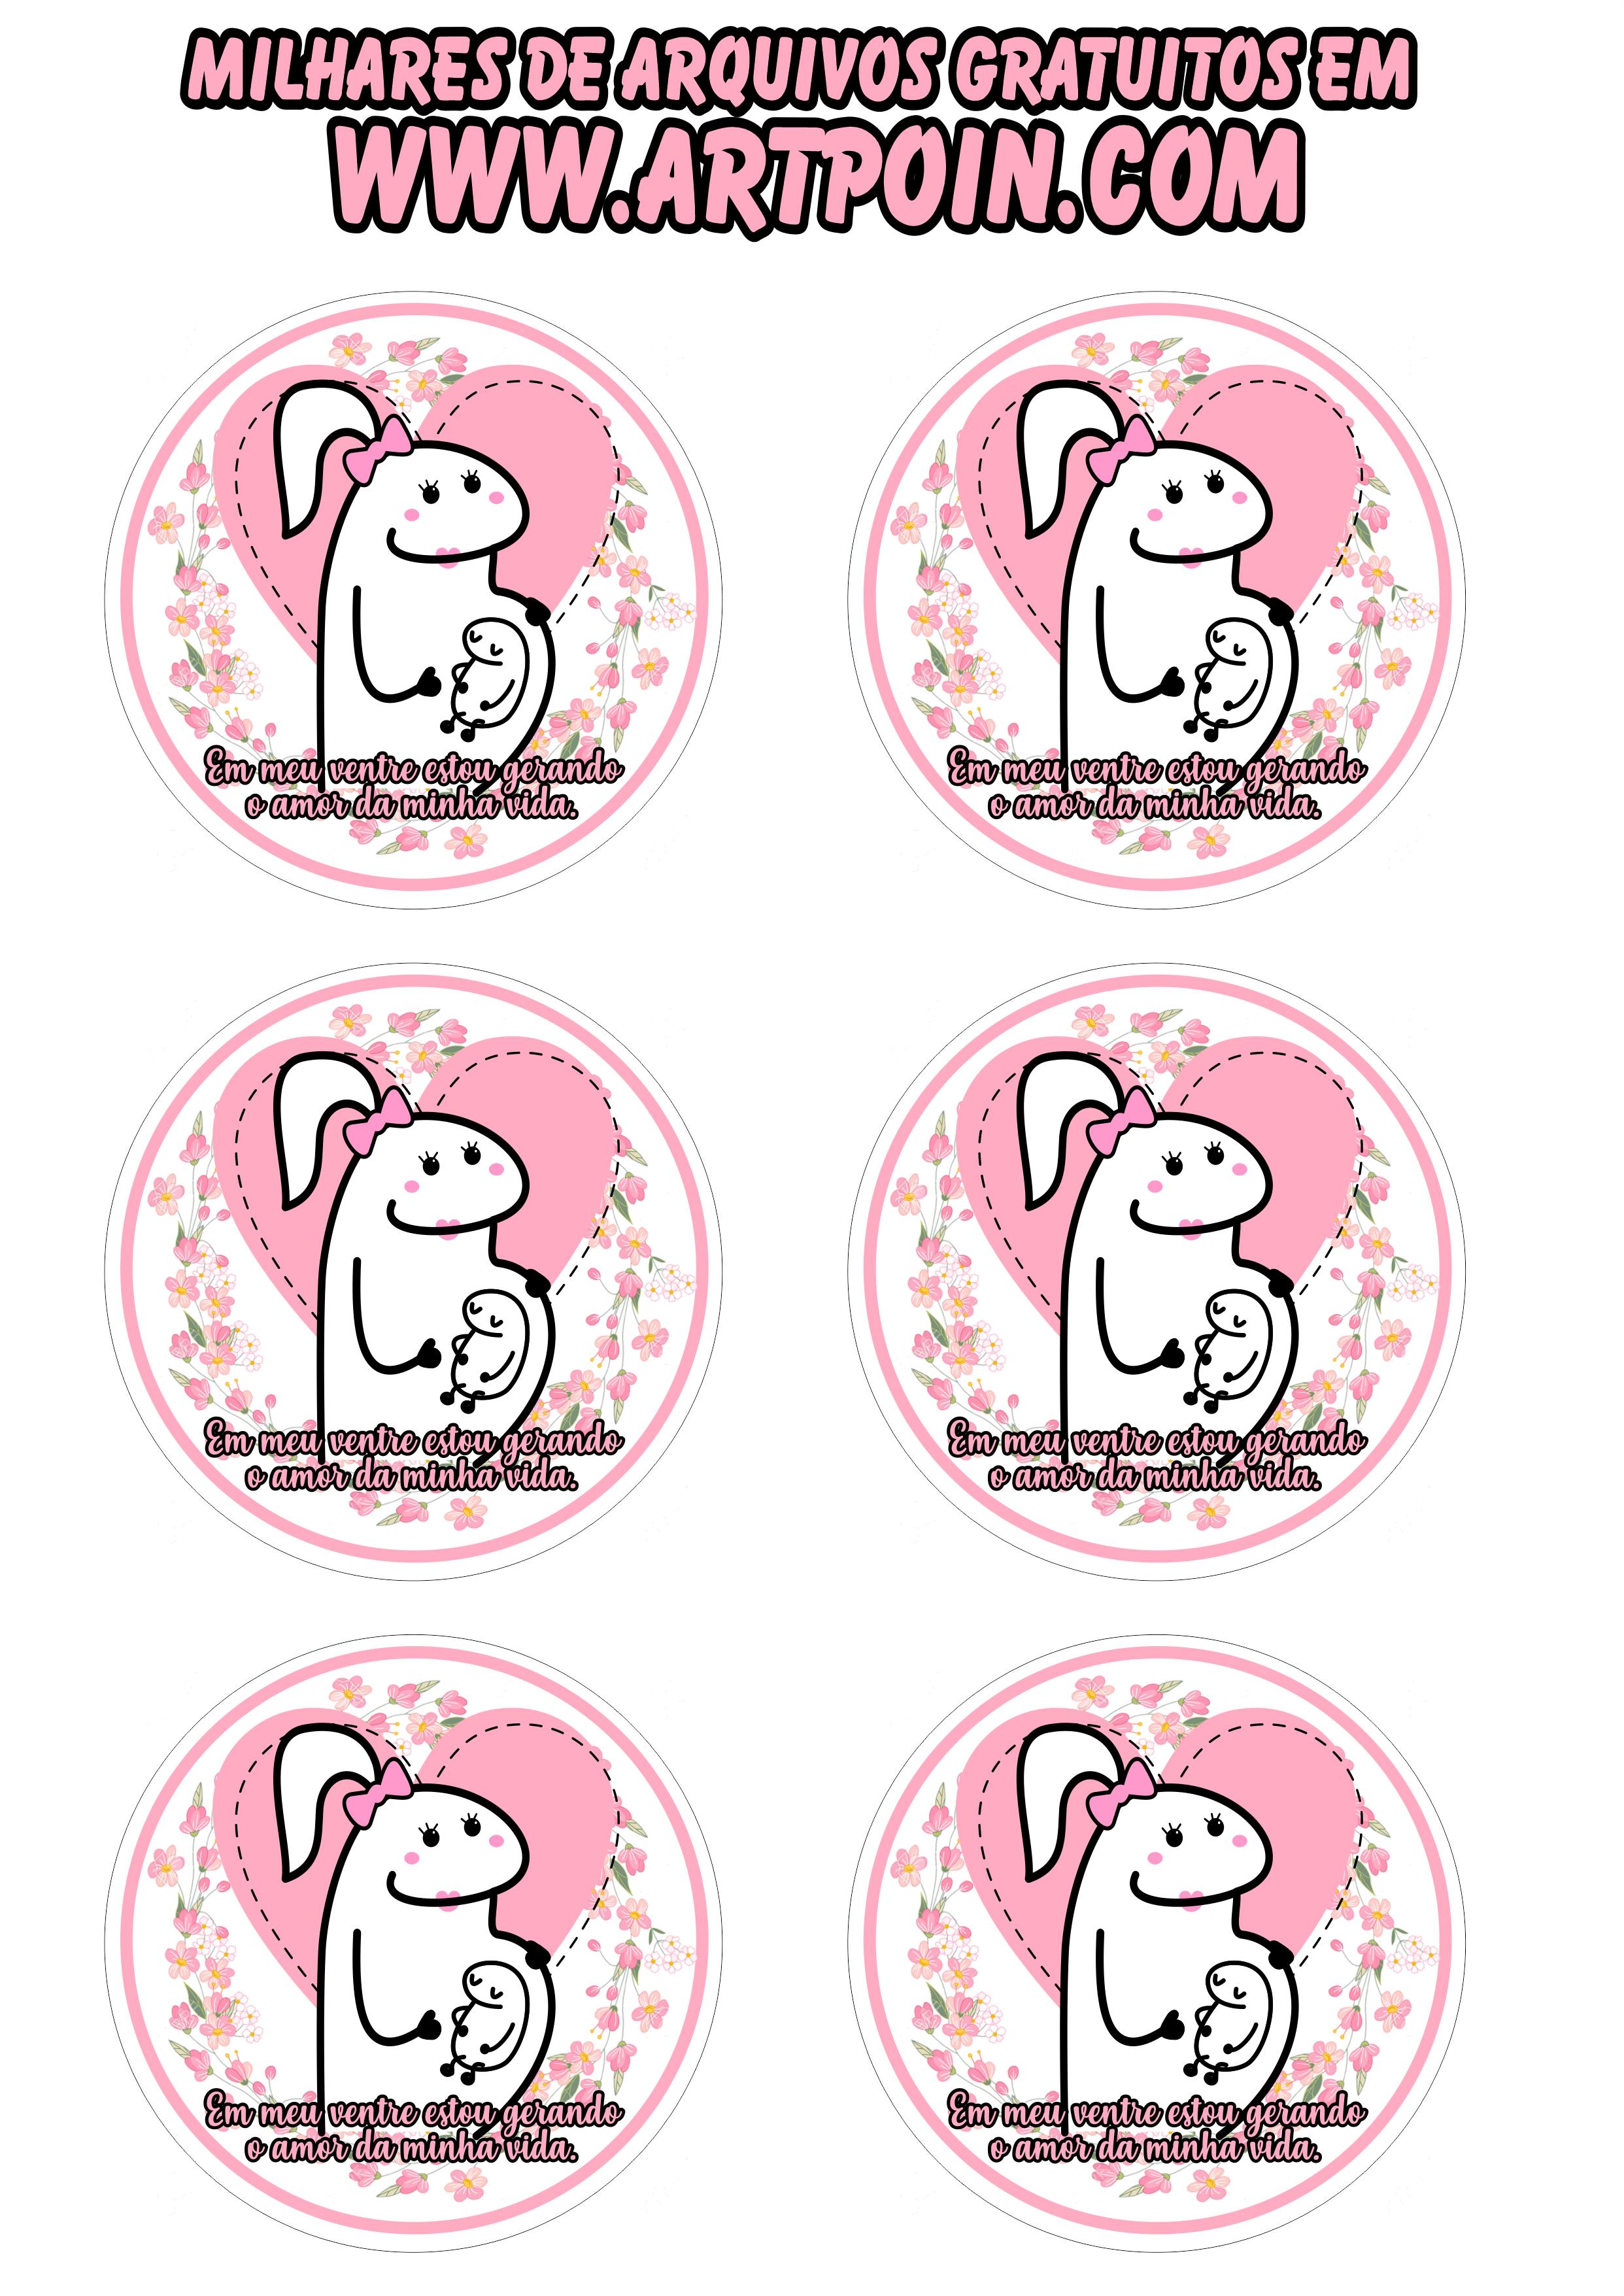 Flork adesivos stickers 6 imagens 5 cm para decoração mamãe grávida png